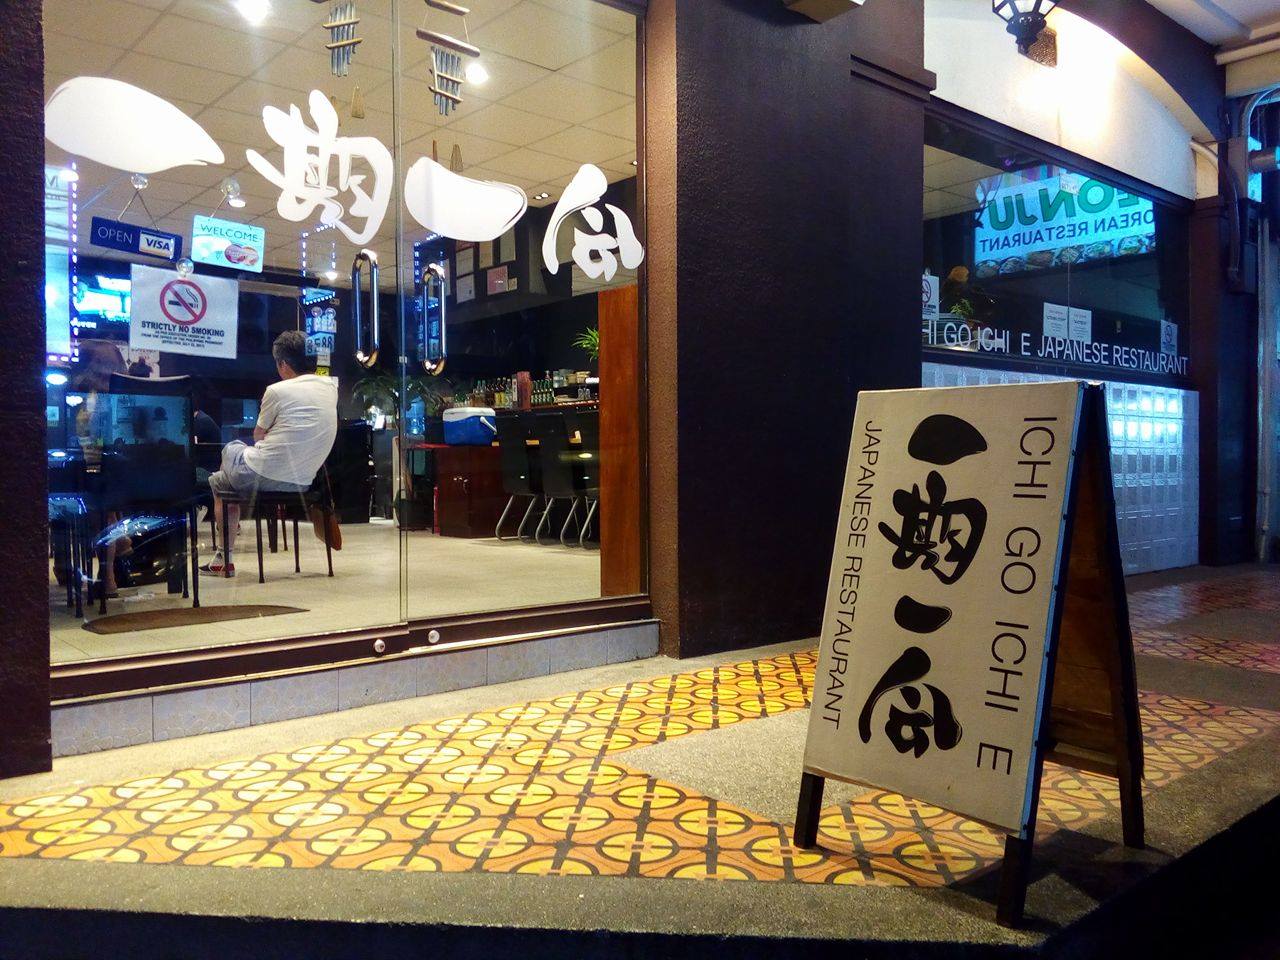 Ichi Go Ichi E Japanese Restaurant